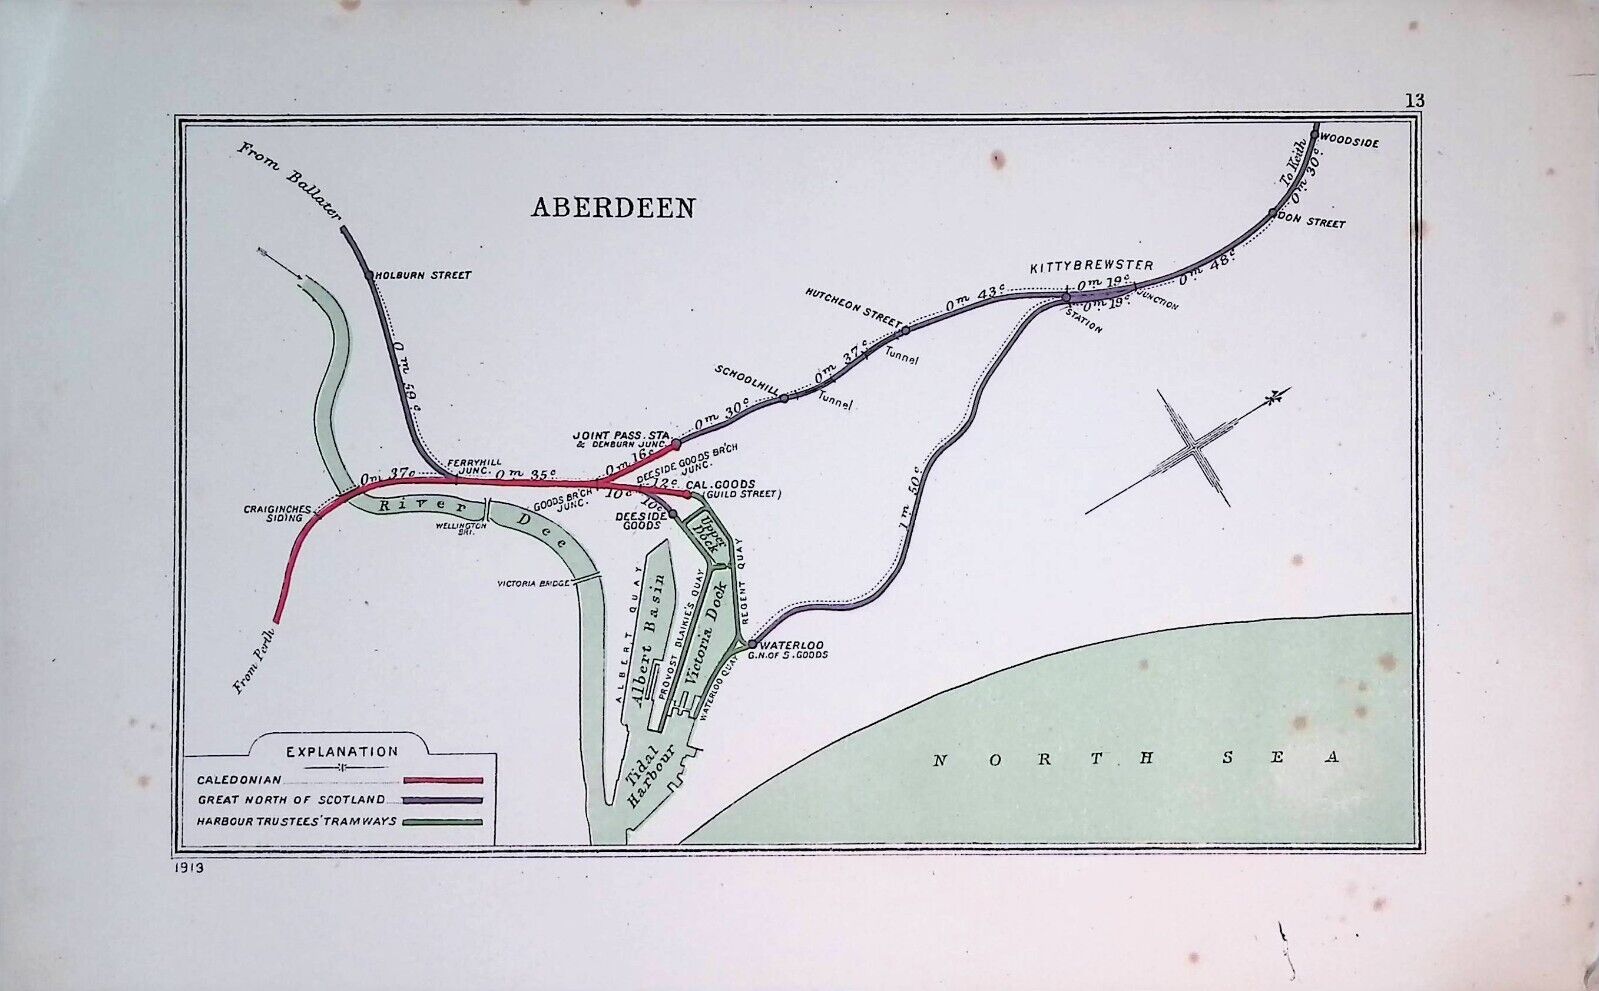 RCH DIAGRAM 13 (1913): Aberdeen